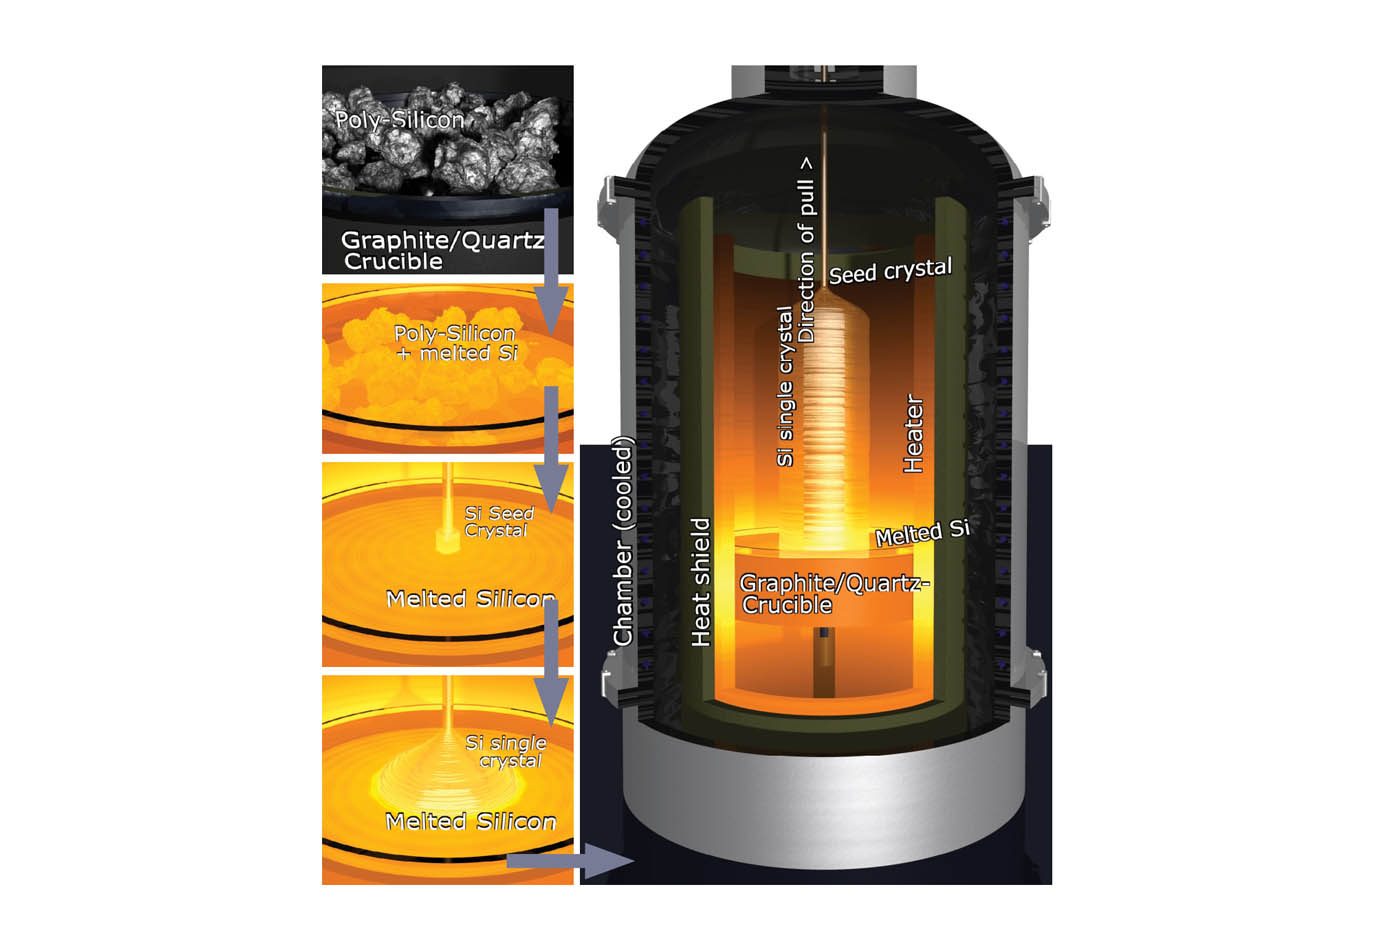 La technique dite de « Czochralski » consiste à faire croître un cristal dans une enceinte chauffées à 1400 °C. Cette technique va permettre la production d’un lingot de silicium dont le niveau de pureté extrême est nécessaire à la production des processeurs. ©MicroChemicals.com